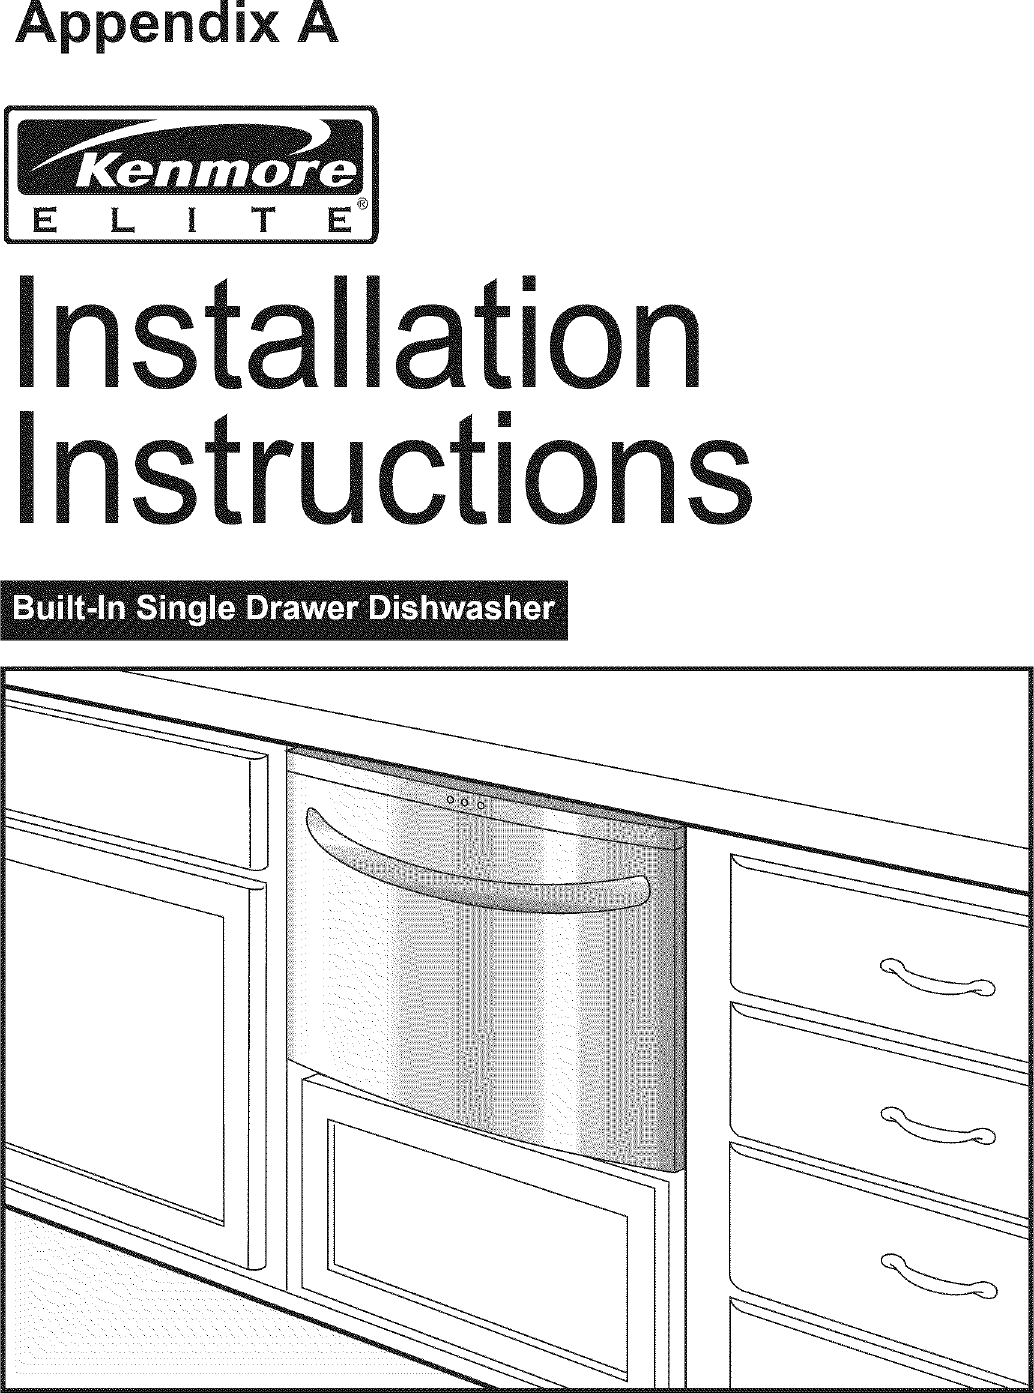 Page 1 of 10 - KENMORE  ELITE Dishwasher Manual L0703158